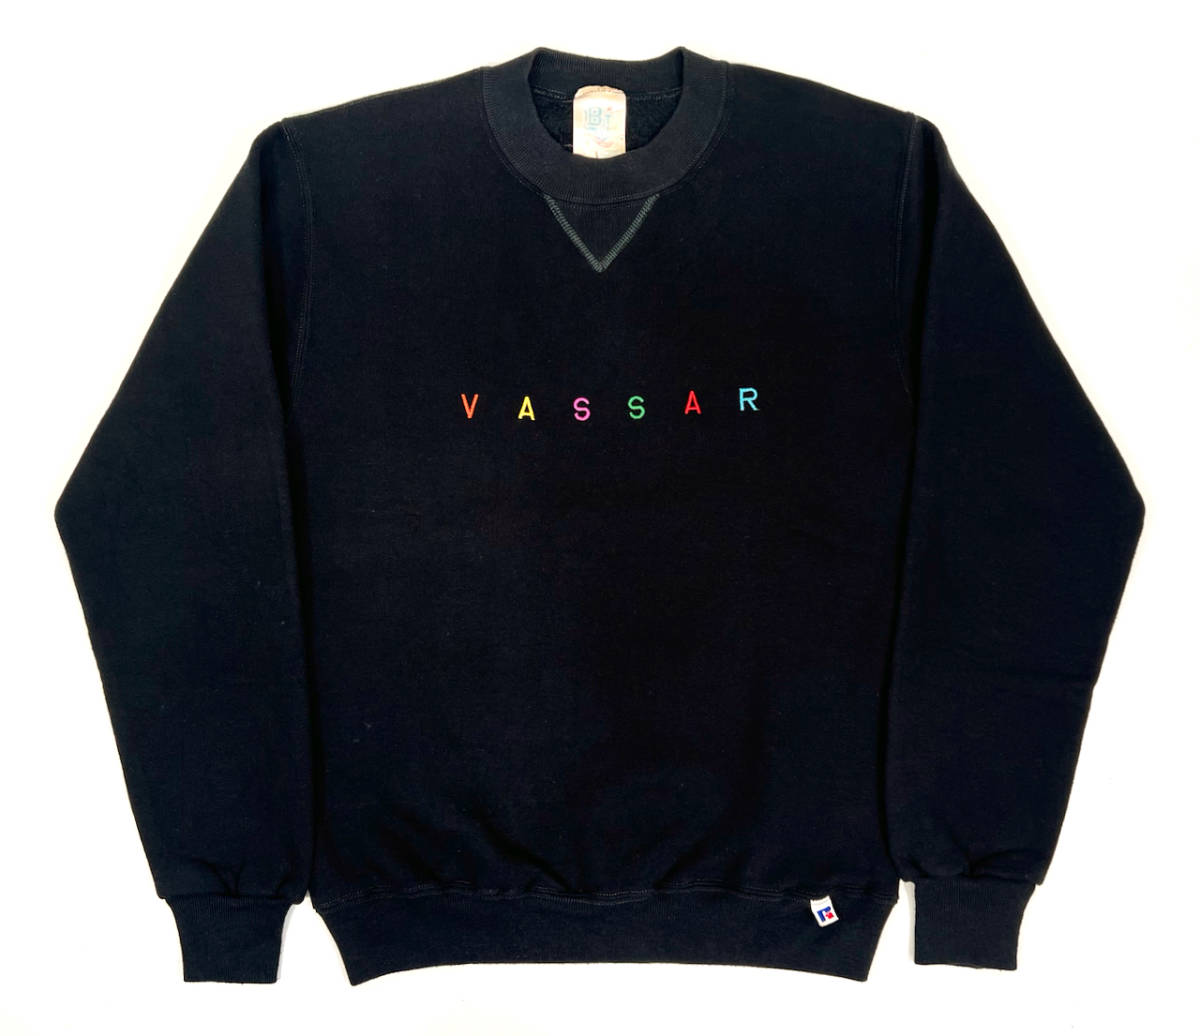 USA製 1980s RUSSELL ATHLETIC VASSAR Sweat shirts S Black ラッセルアスレティック スウェットシャツ ブラック 黒 ヴィンテージ